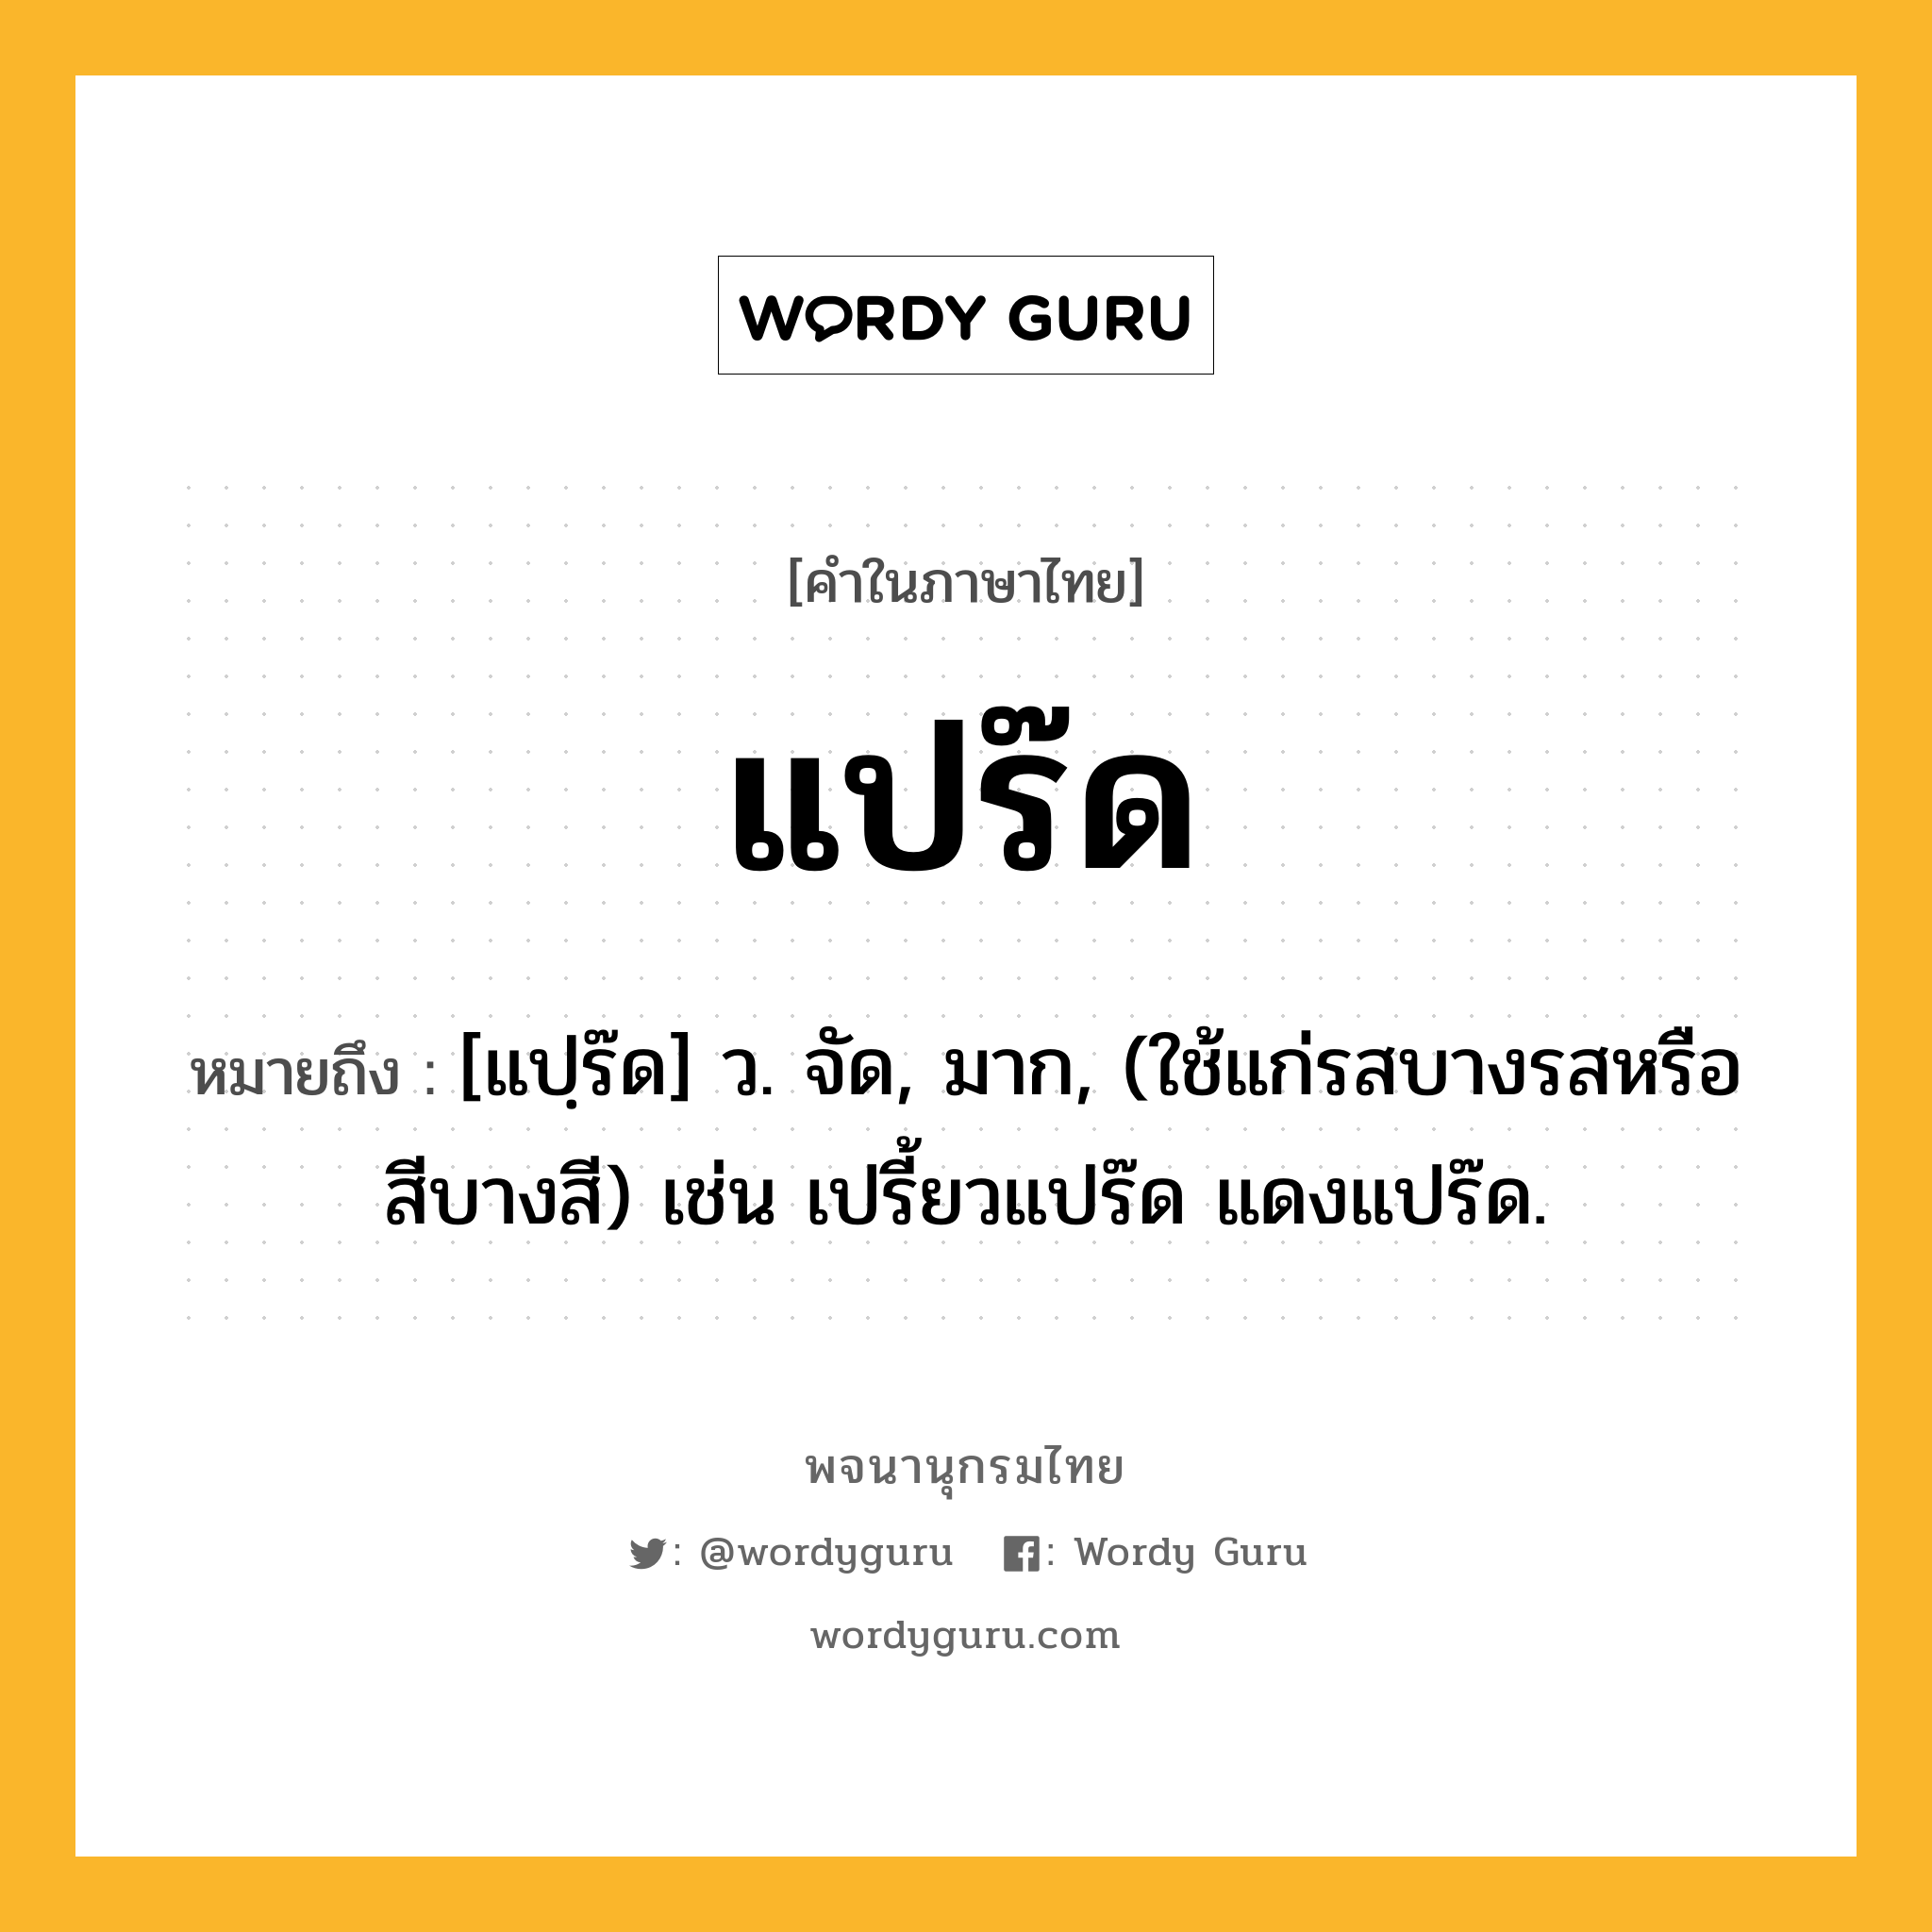 แปร๊ด ความหมาย หมายถึงอะไร?, คำในภาษาไทย แปร๊ด หมายถึง [แปฺร๊ด] ว. จัด, มาก, (ใช้แก่รสบางรสหรือสีบางสี) เช่น เปรี้ยวแปร๊ด แดงแปร๊ด.